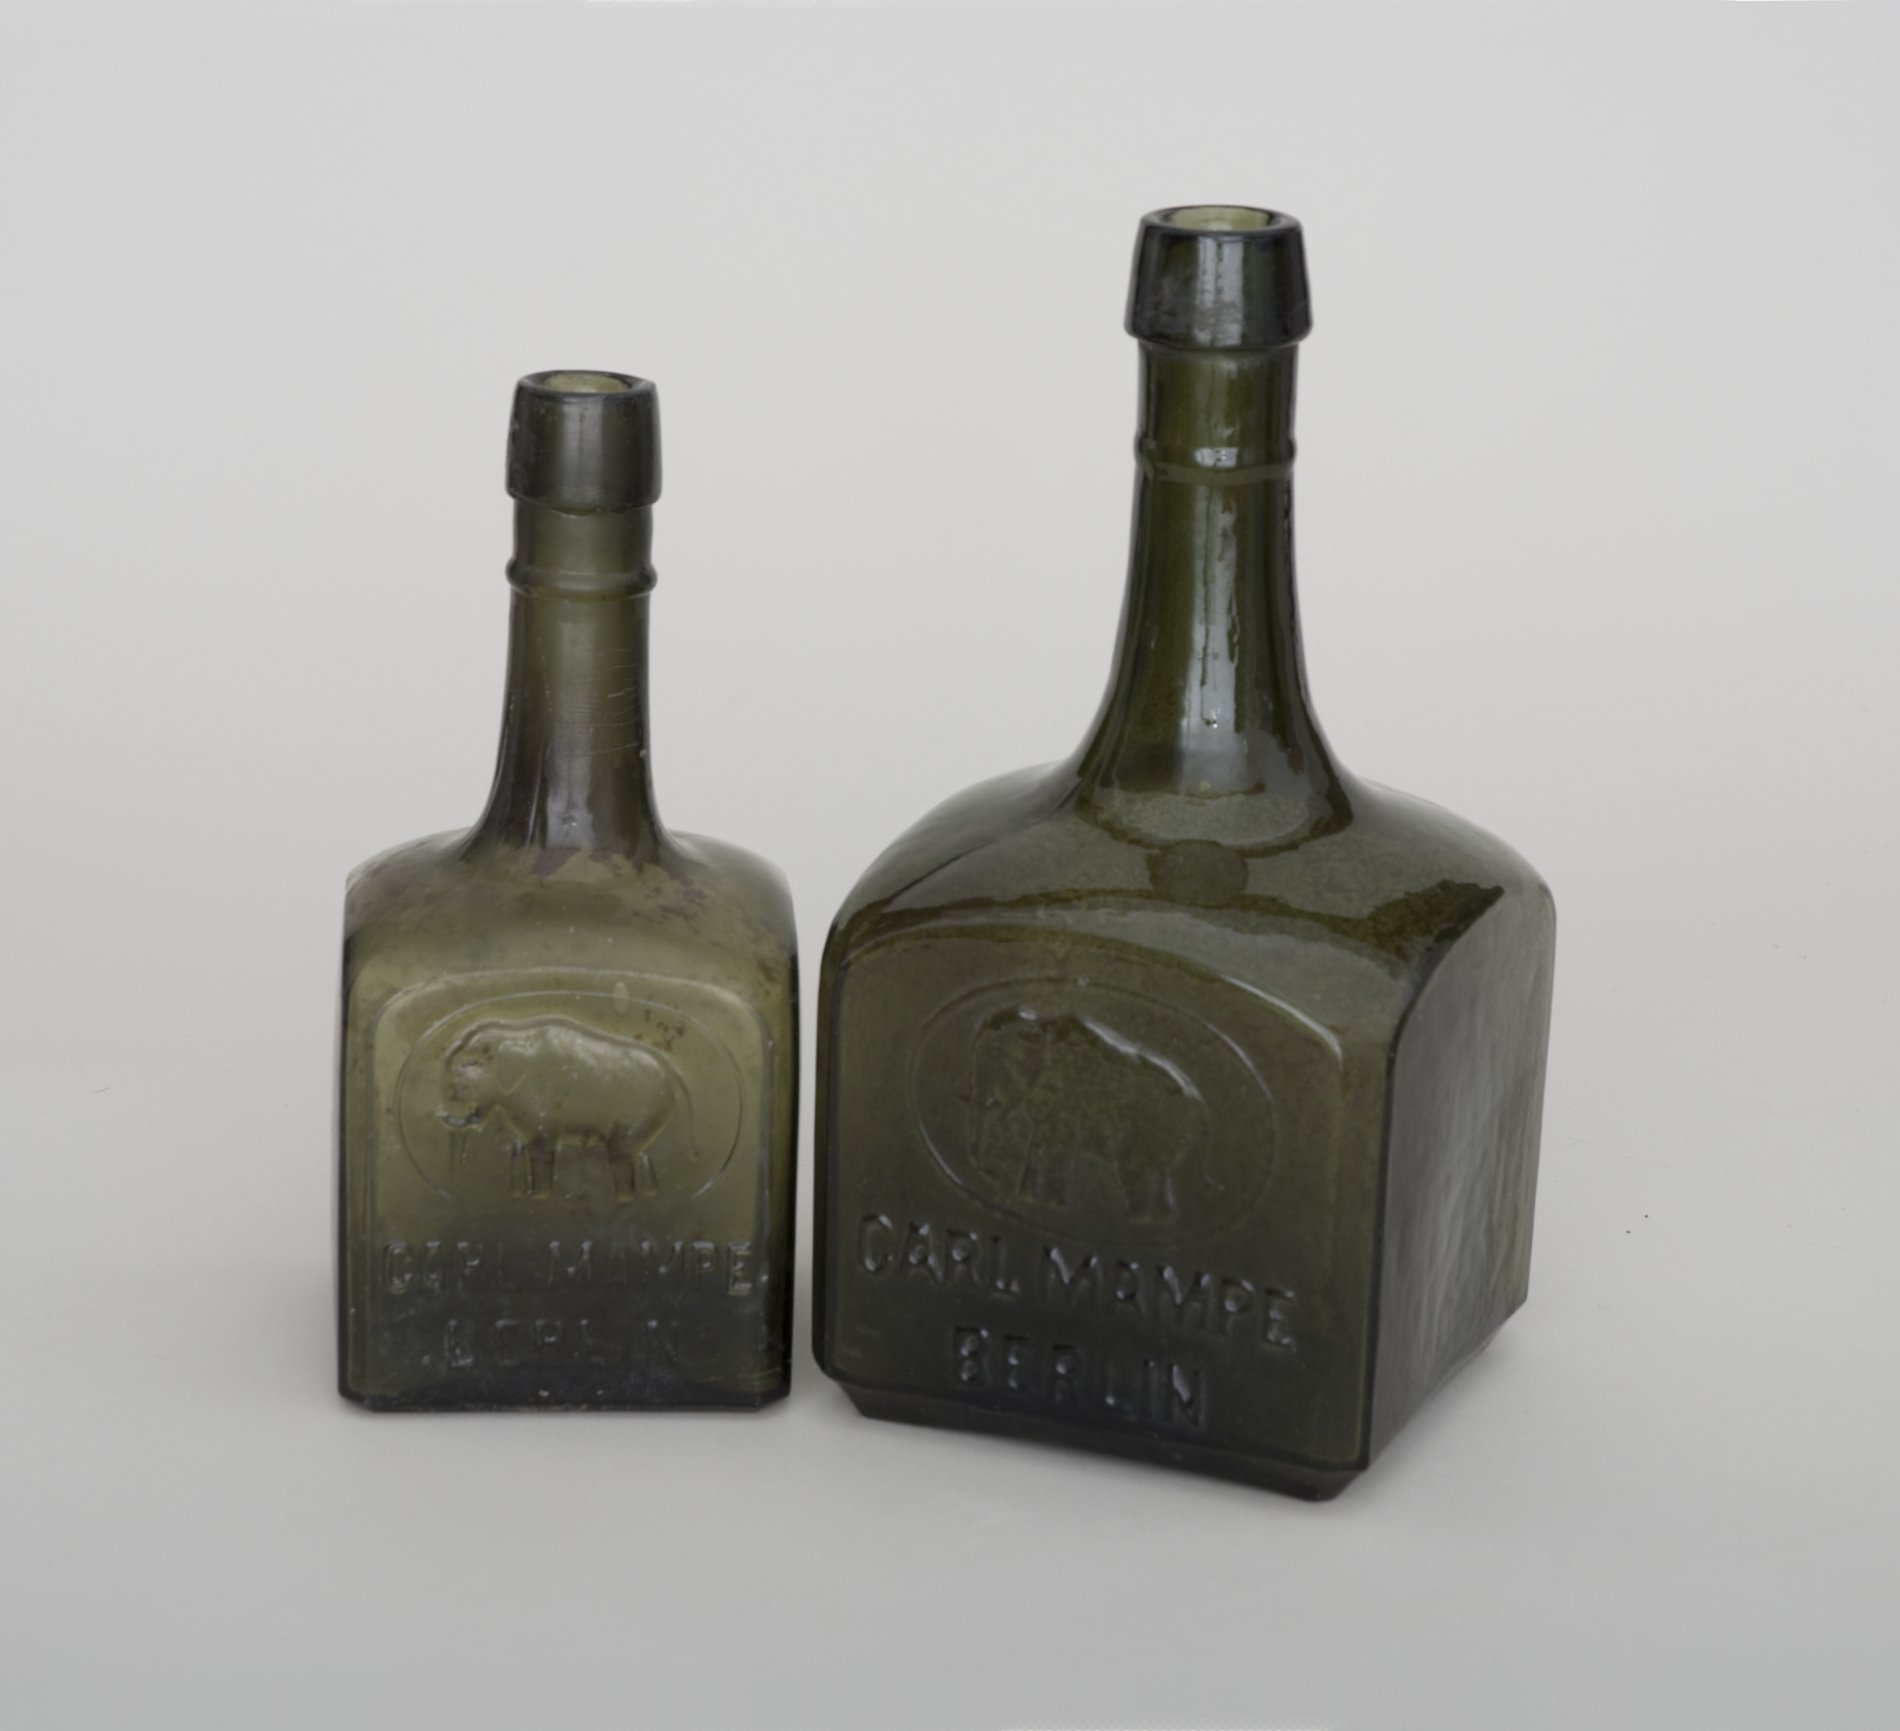 Zwei Likörflaschen der Firma "Carl Mampe" (Stiftung Domäne Dahlem - Landgut und Museum, Weiternutzung nur mit Genehmigung des Museums CC BY-NC-SA)